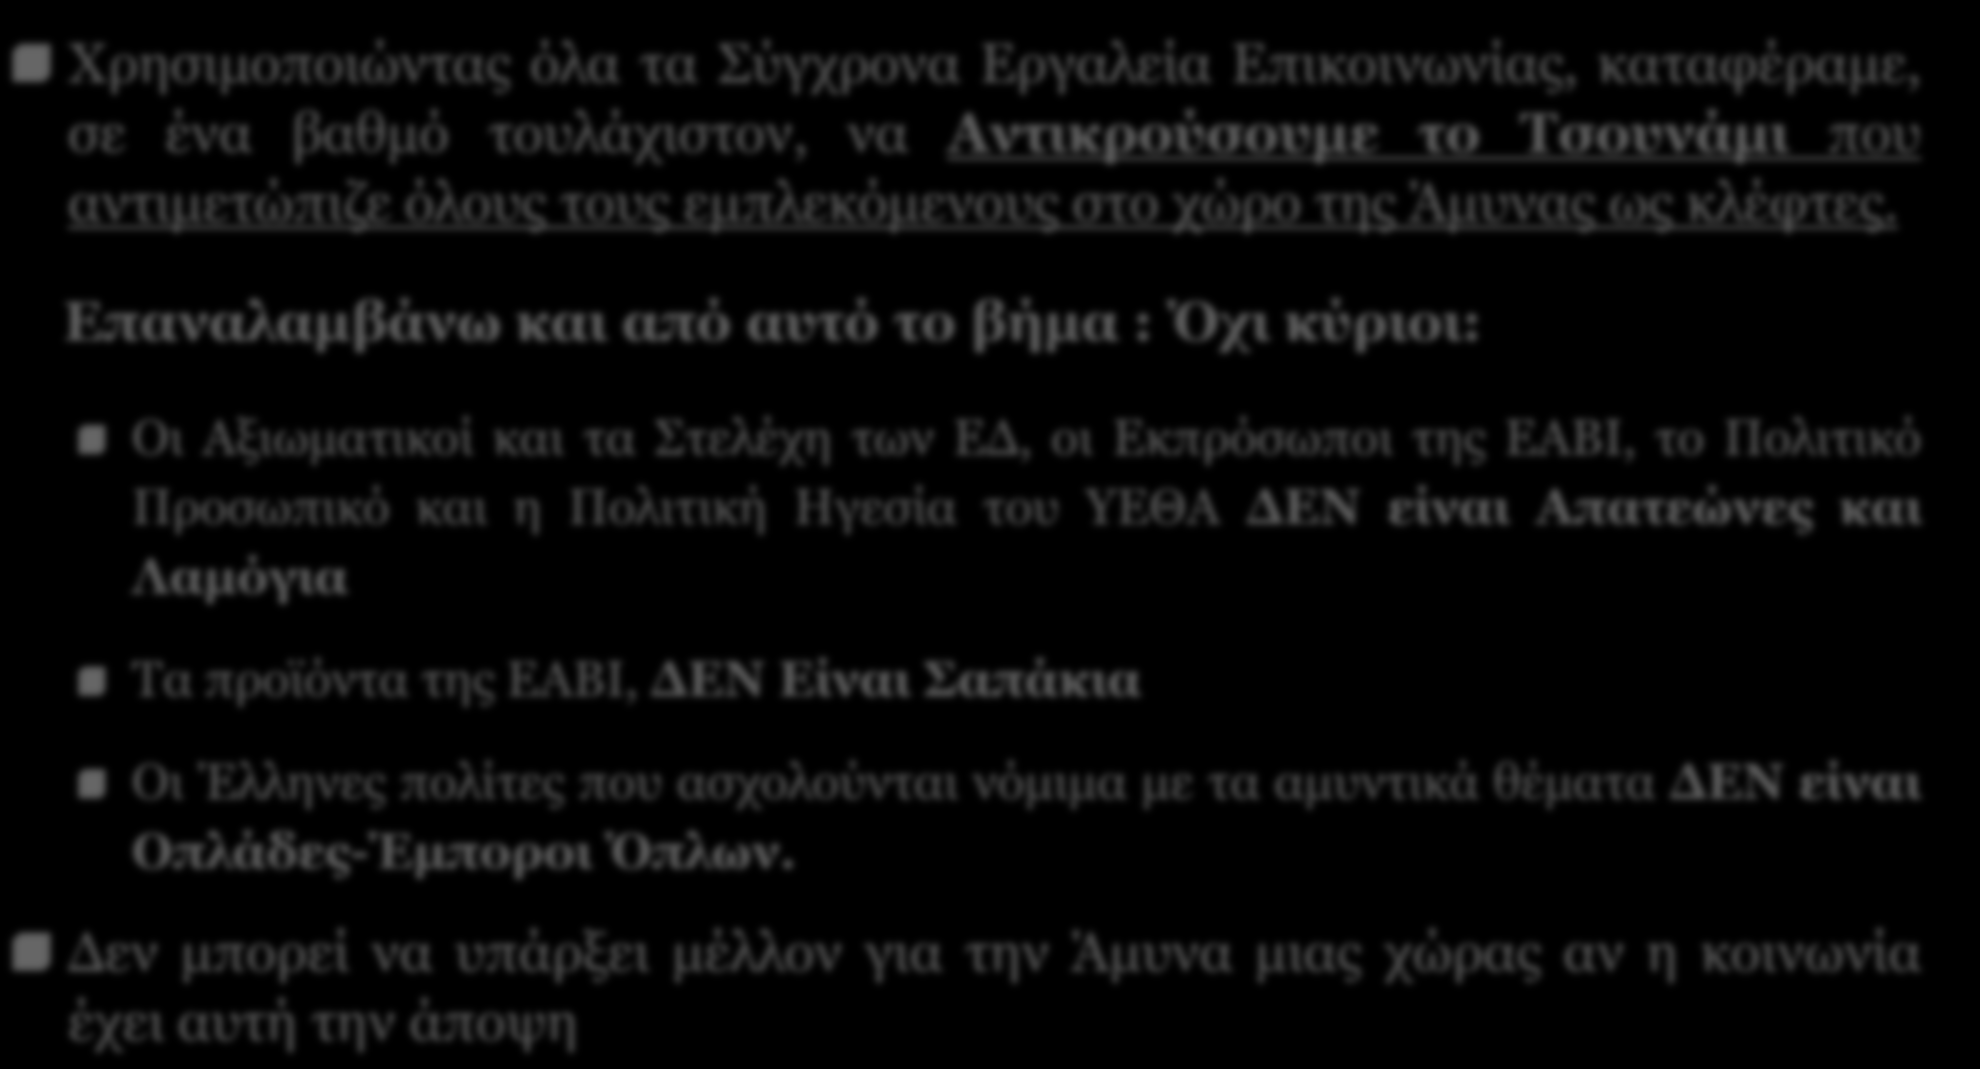 ΣΕΚΠΥ - Σύνδεσμος Ελλήνων Κατασκευαστών Αμυντικού Υλικού - SEKPY 14 ΕΑΒΙ Παρούσα Κατάσταση (4) Χρησιμοποιώντας όλα τα Σύγχρονα Εργαλεία Επικοινωνίας, καταφέραμε, σε ένα βαθμό τουλάχιστον, να